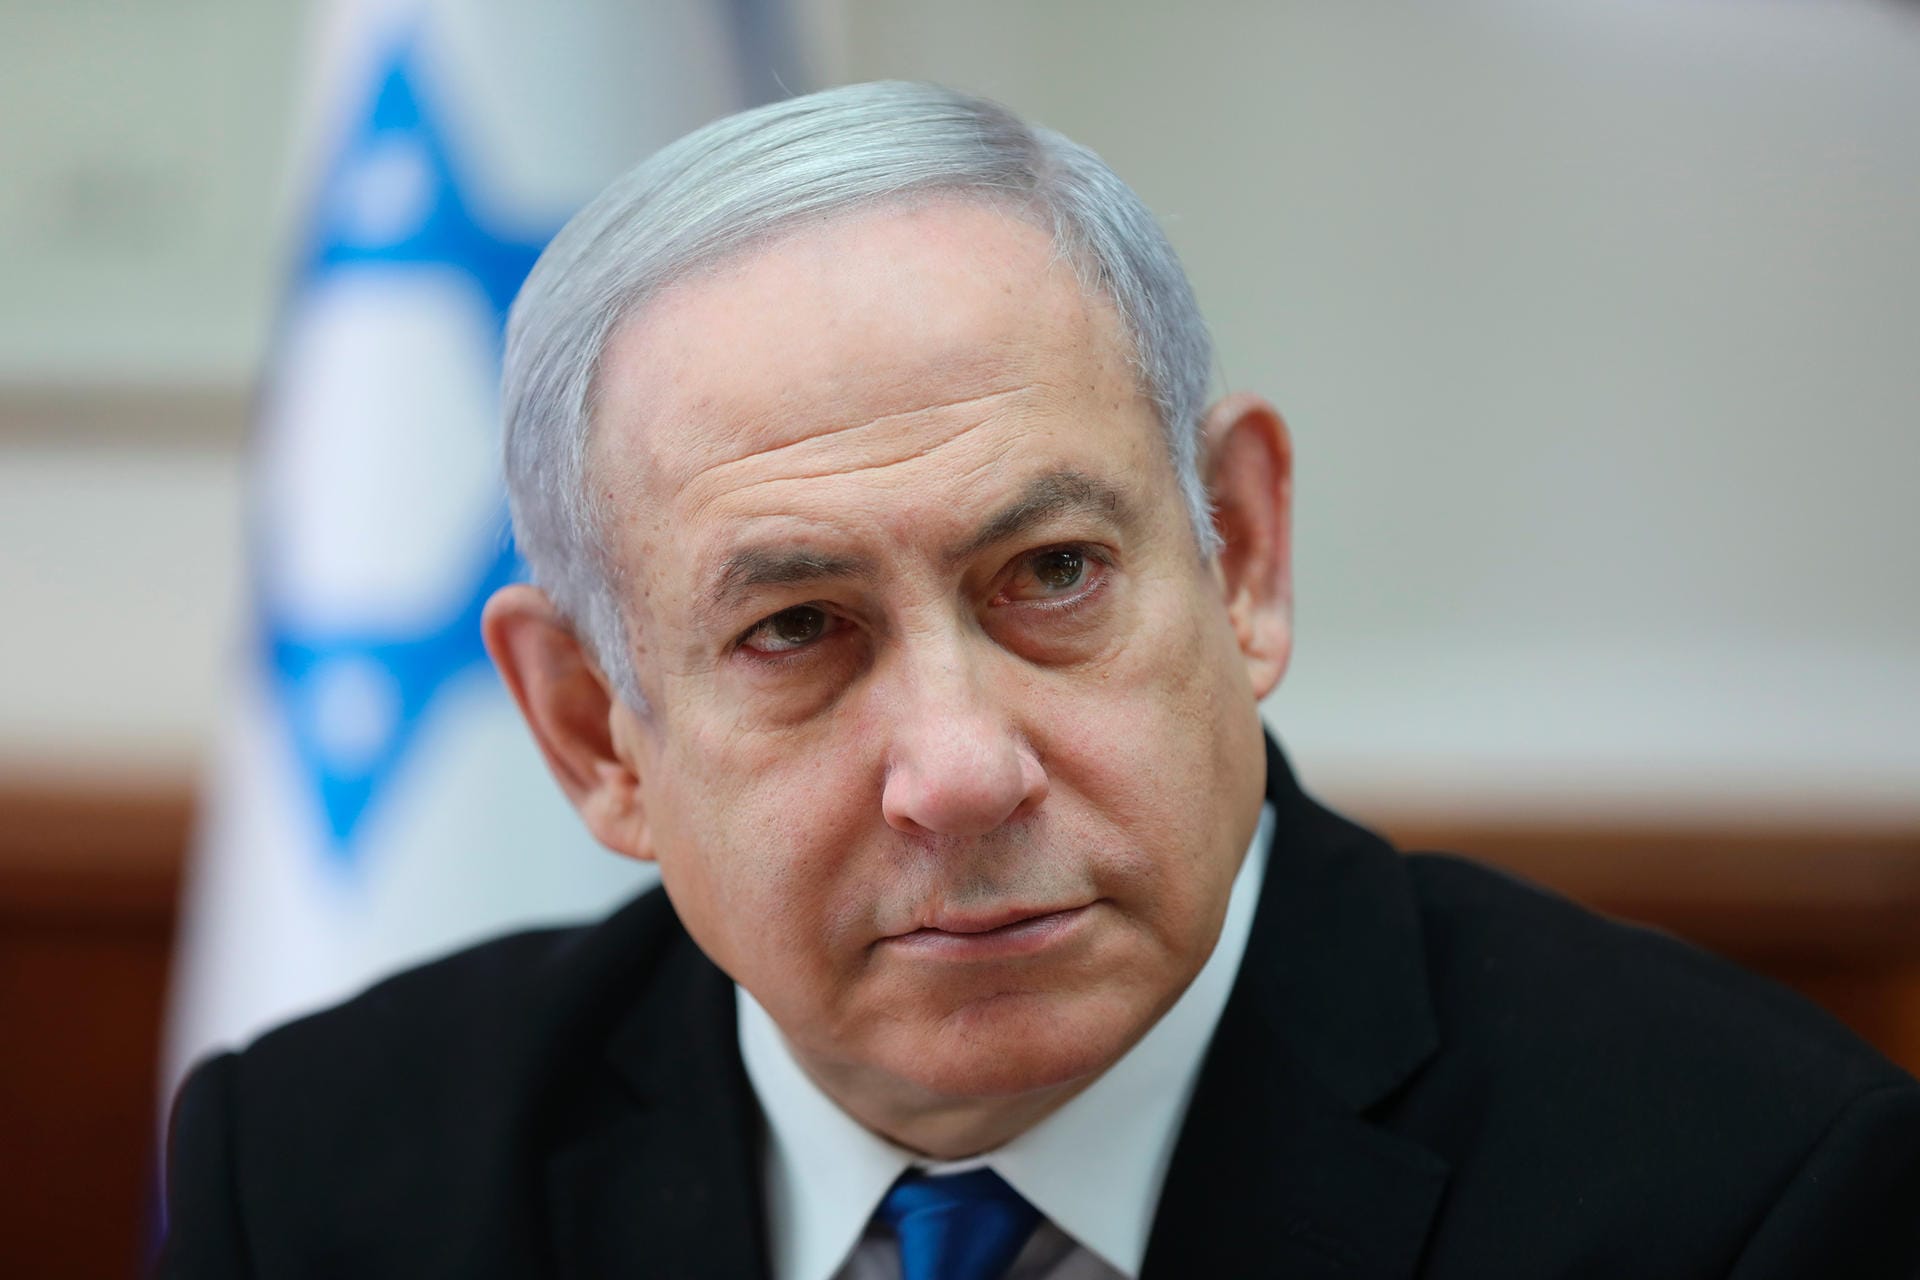 Israels Regierungschef Benjamin Netanjahu (Archivbild) hat dem Iran im Falle eines Angriffs auf israelische Ziele mit einem "gewaltigen Gegenschlag" gedroht. "Jeder, der uns angreift, wird einen gewaltigen Gegenschlag erhalten", sagte Netanjahu am Mittwoch auf einer Konferenz in Jerusalem. Die iranischen Revolutionsgarden hatten zuvor mit Angriffen gegen Israel und auf mit den USA "verbündete Regierungen" gedroht.